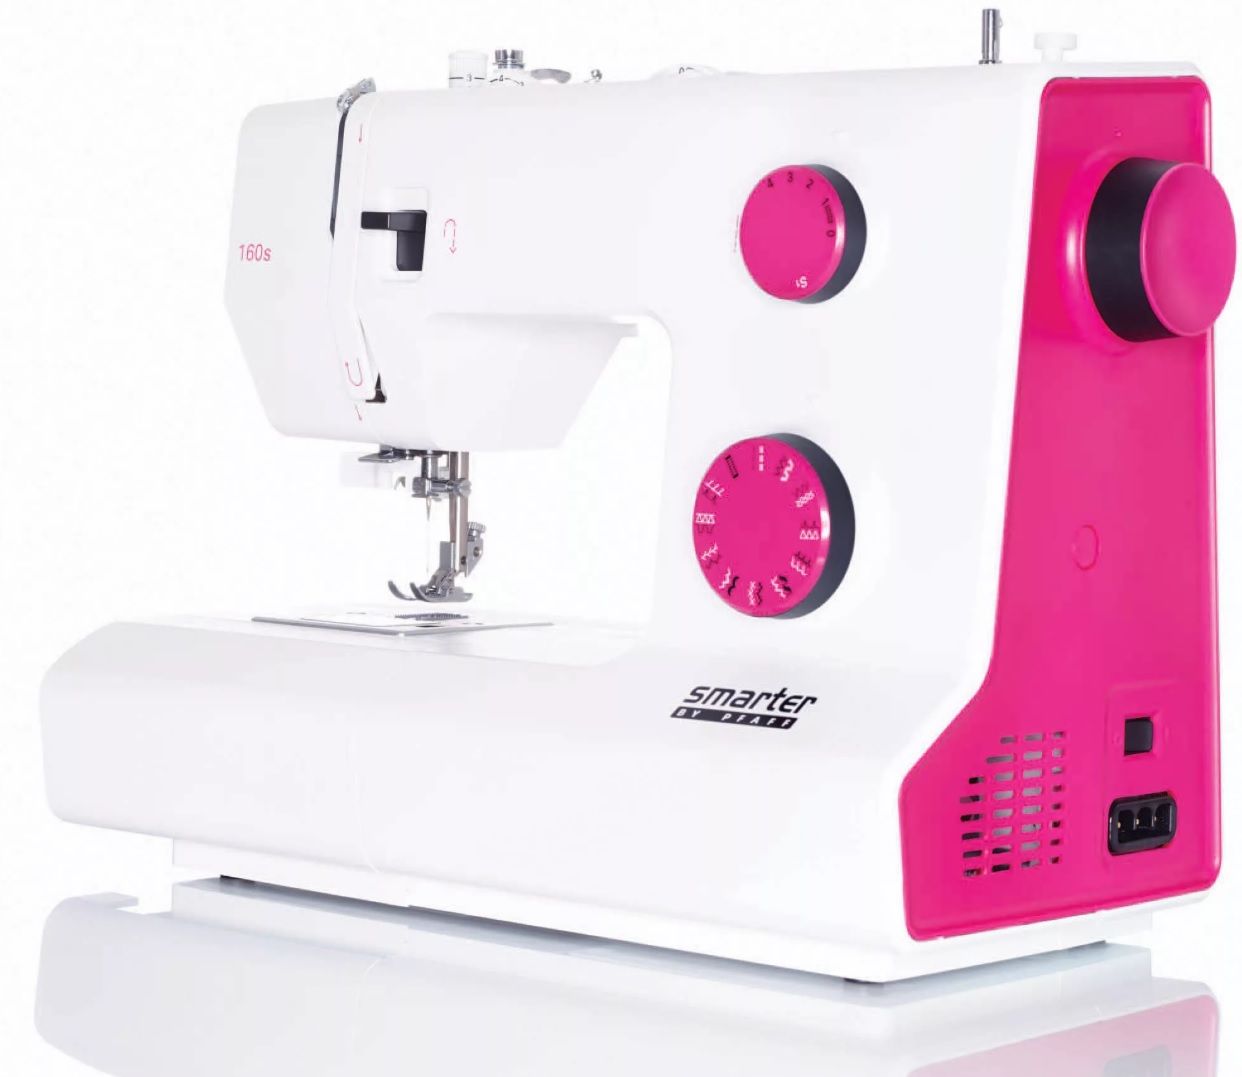 Maquina de coser Pfaff Smarter 160s